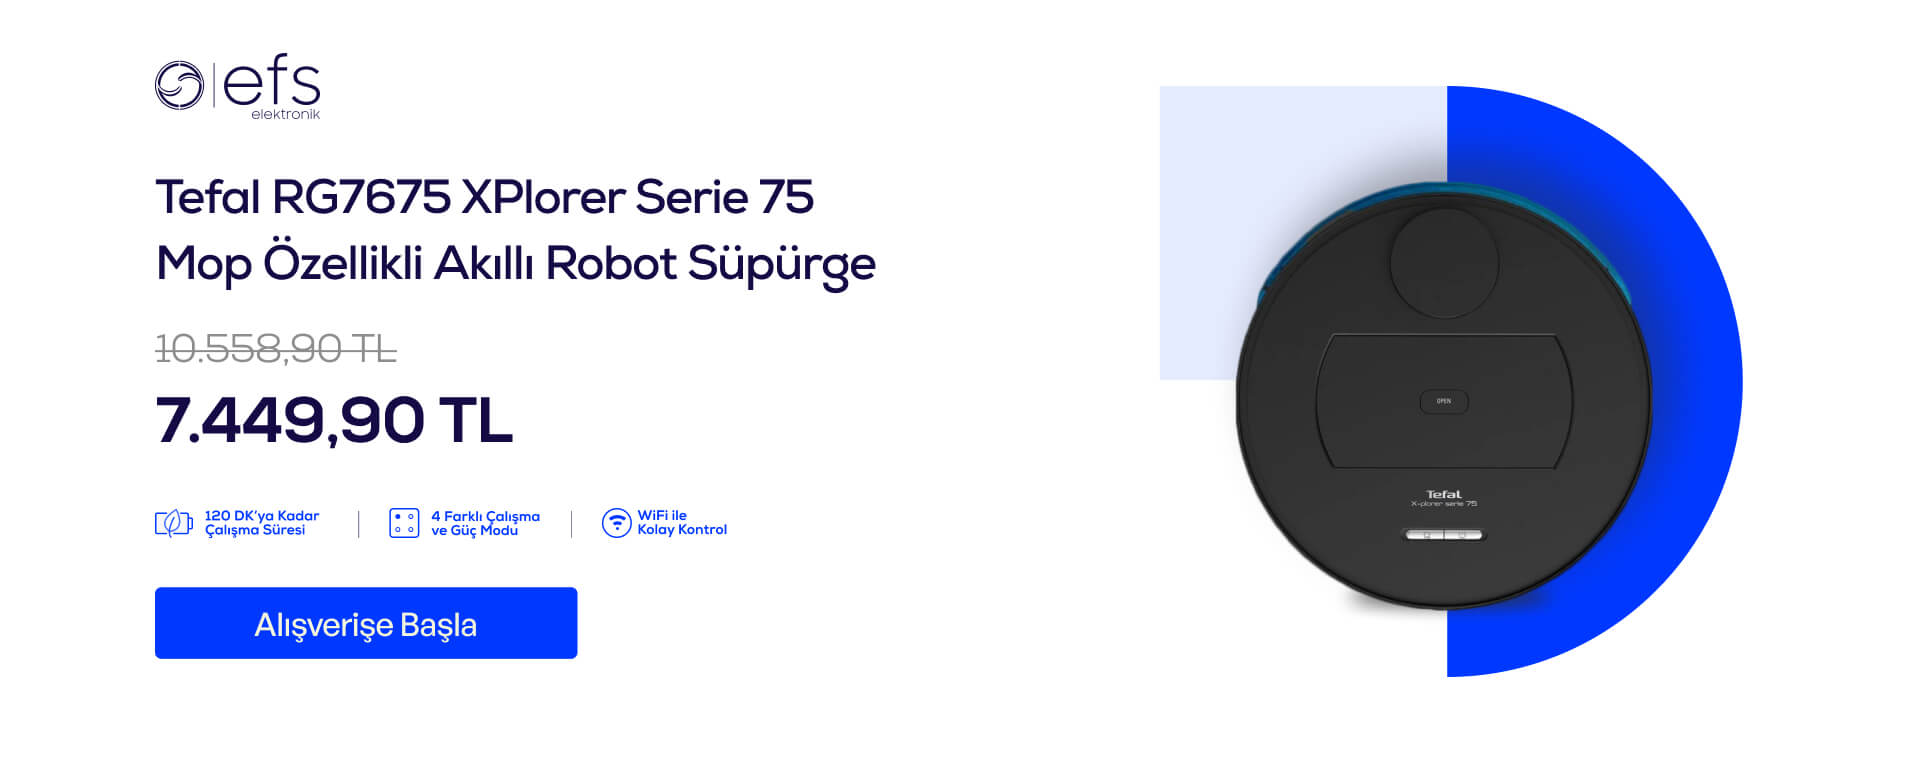 Tefal RG7675 XPlorer Serie 75 Mop Özellikli Akıllı Robot Süpürge